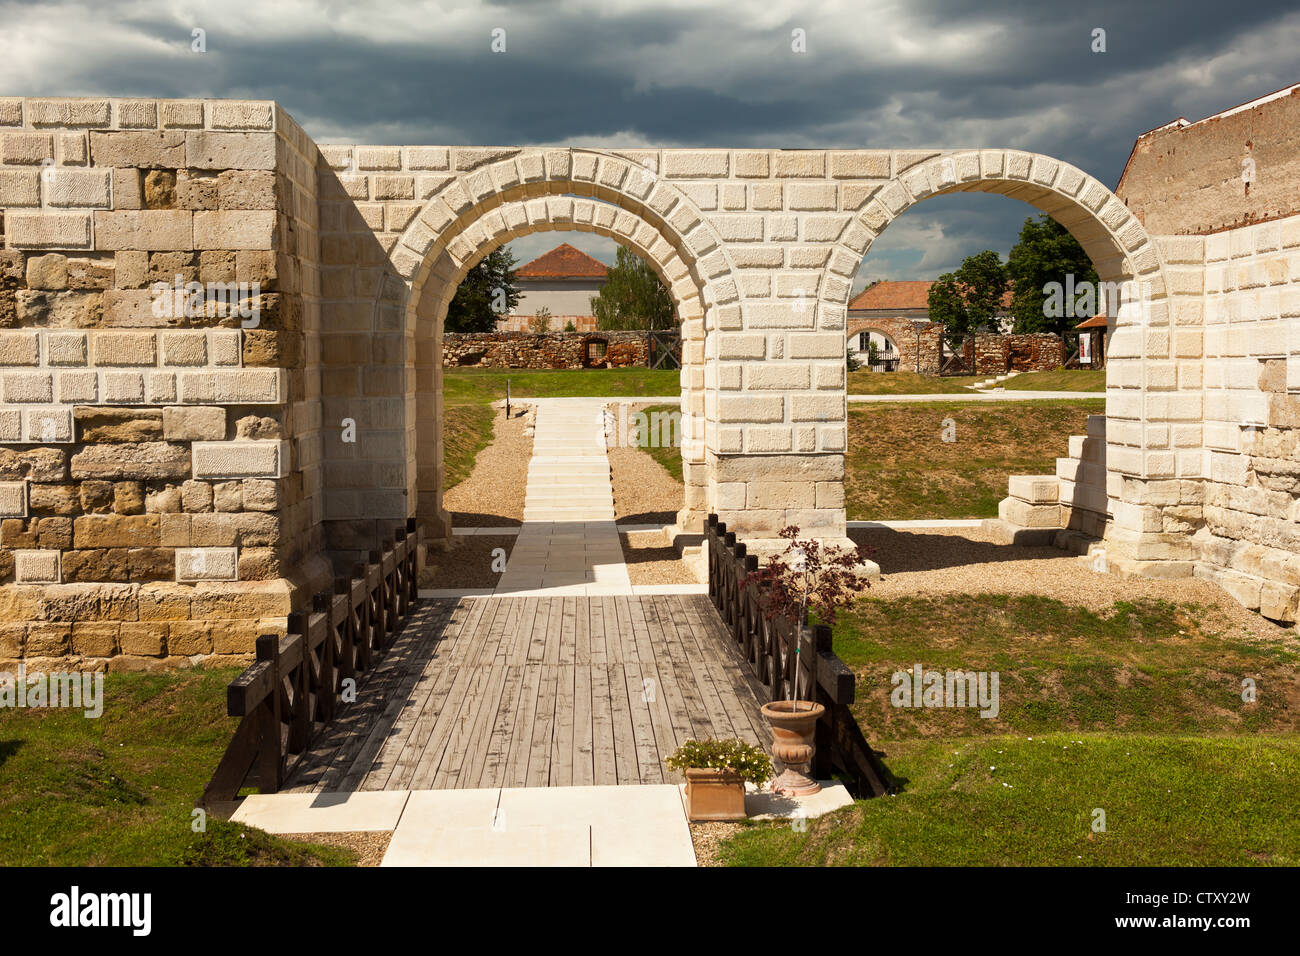 Ruins of the Apulum Roman castra in Alba Iulia, Romania Stock Photo